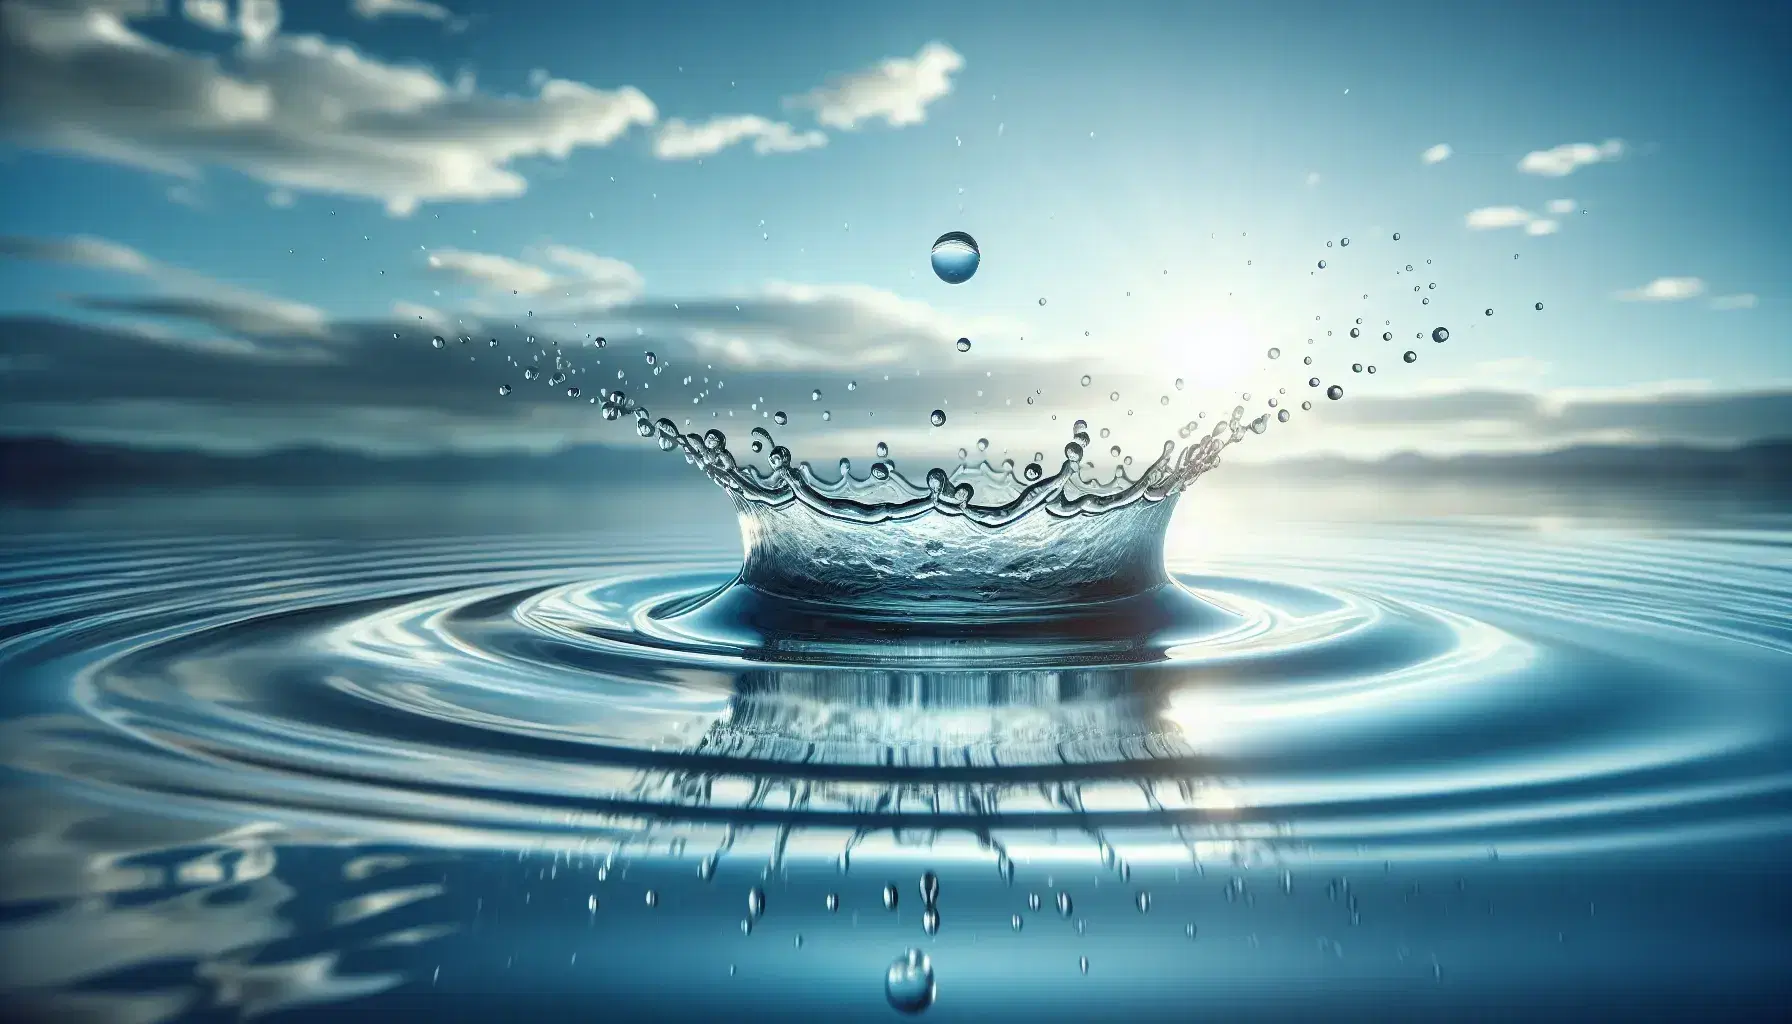 Gota de agua impactando en superficie tranquila creando corona de salpicaduras y ondas concéntricas con reflejos de cielo azul.